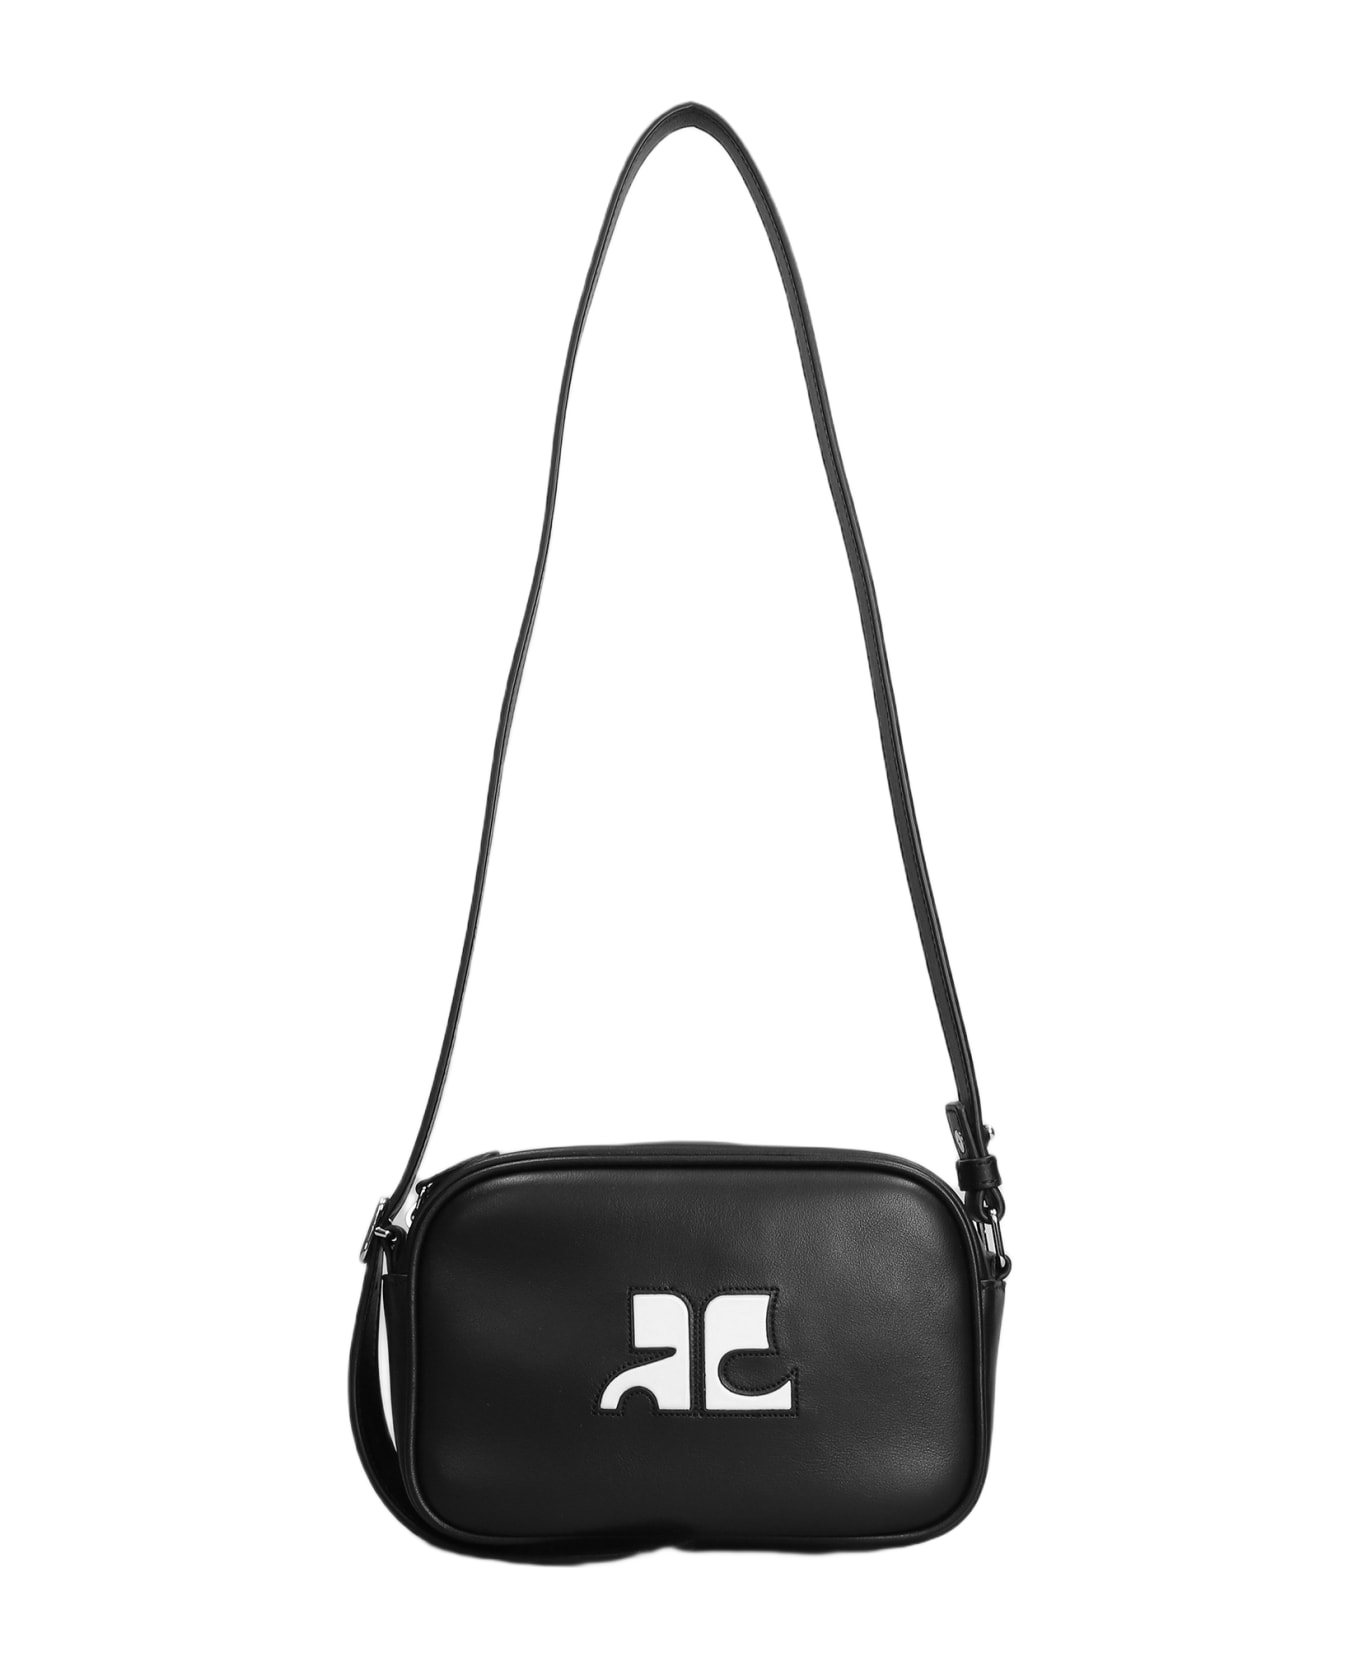 Courrèges Shoulder Bag In Black Leather - black ショルダーバッグ